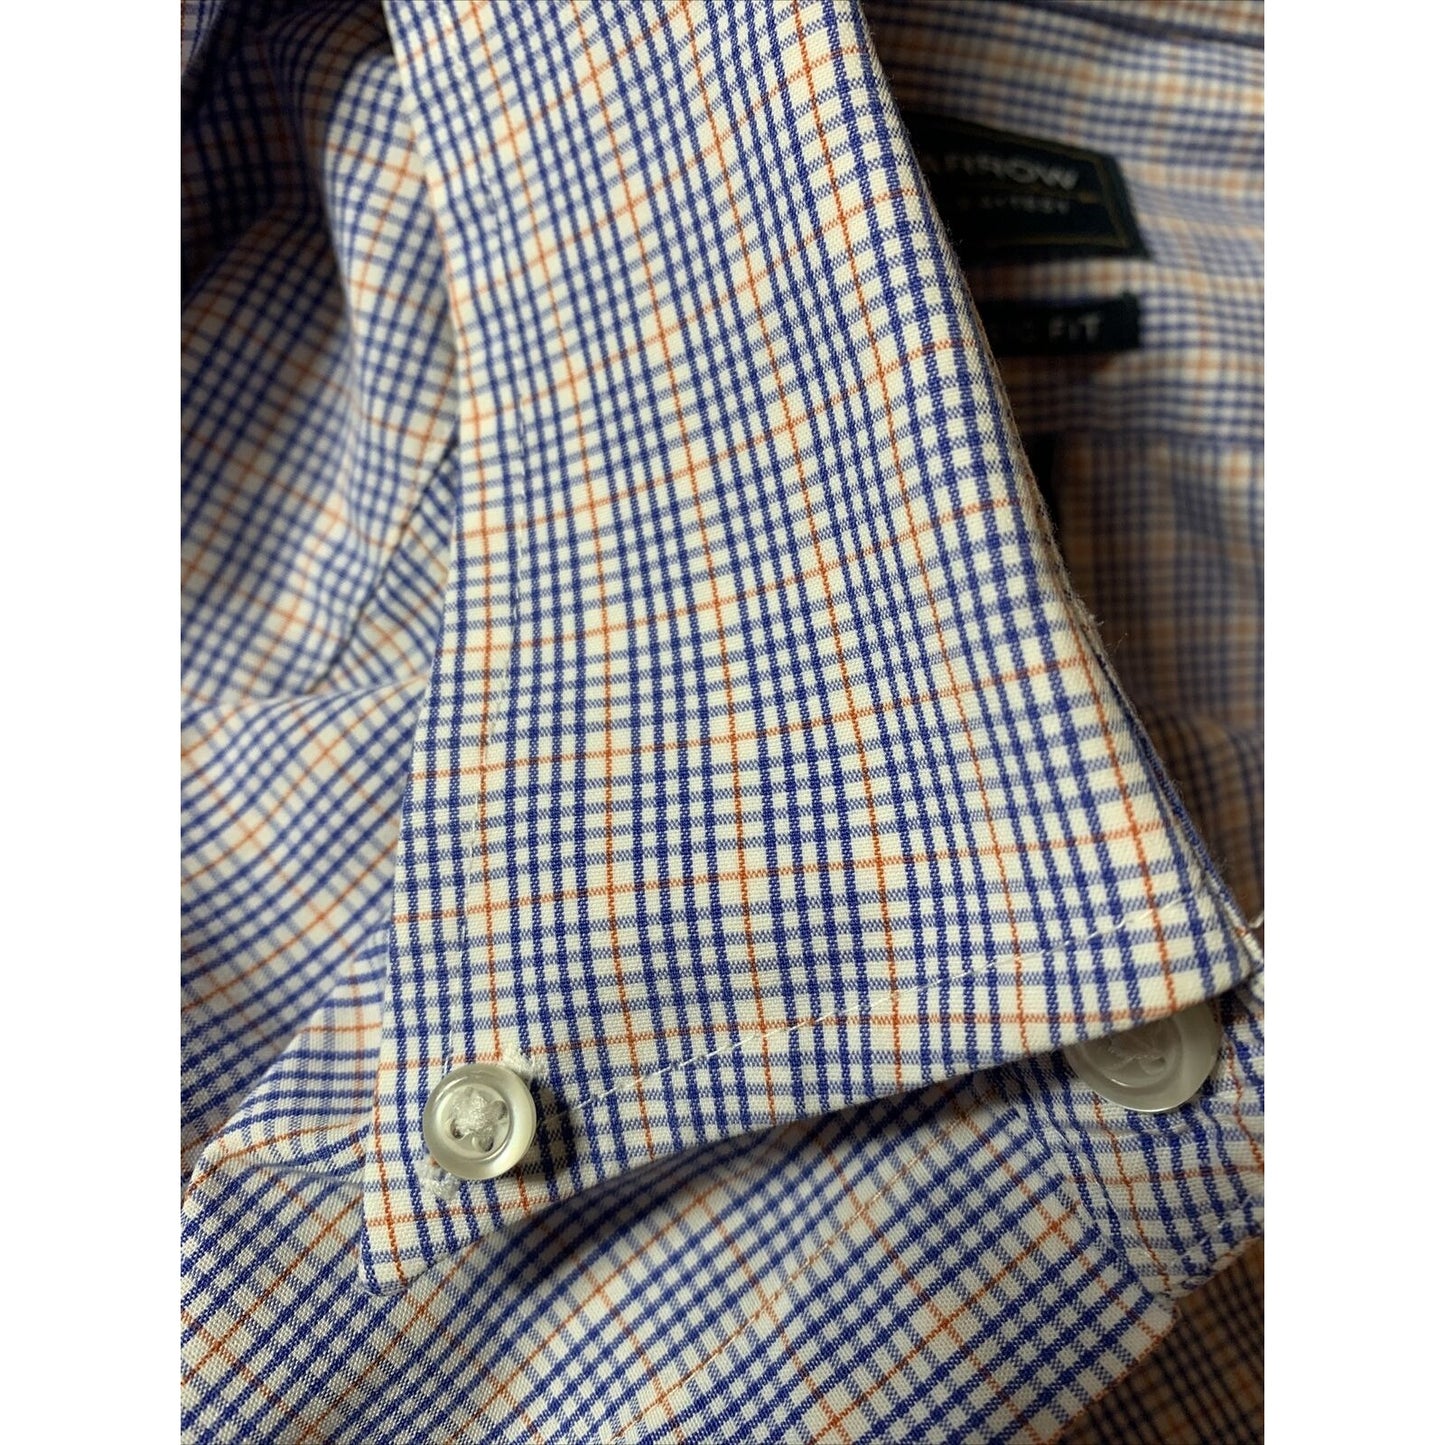 Arrow Button Up Dress Shirt Men's 16 32-33 Long Sleeve Multi Plaid Classic Fit